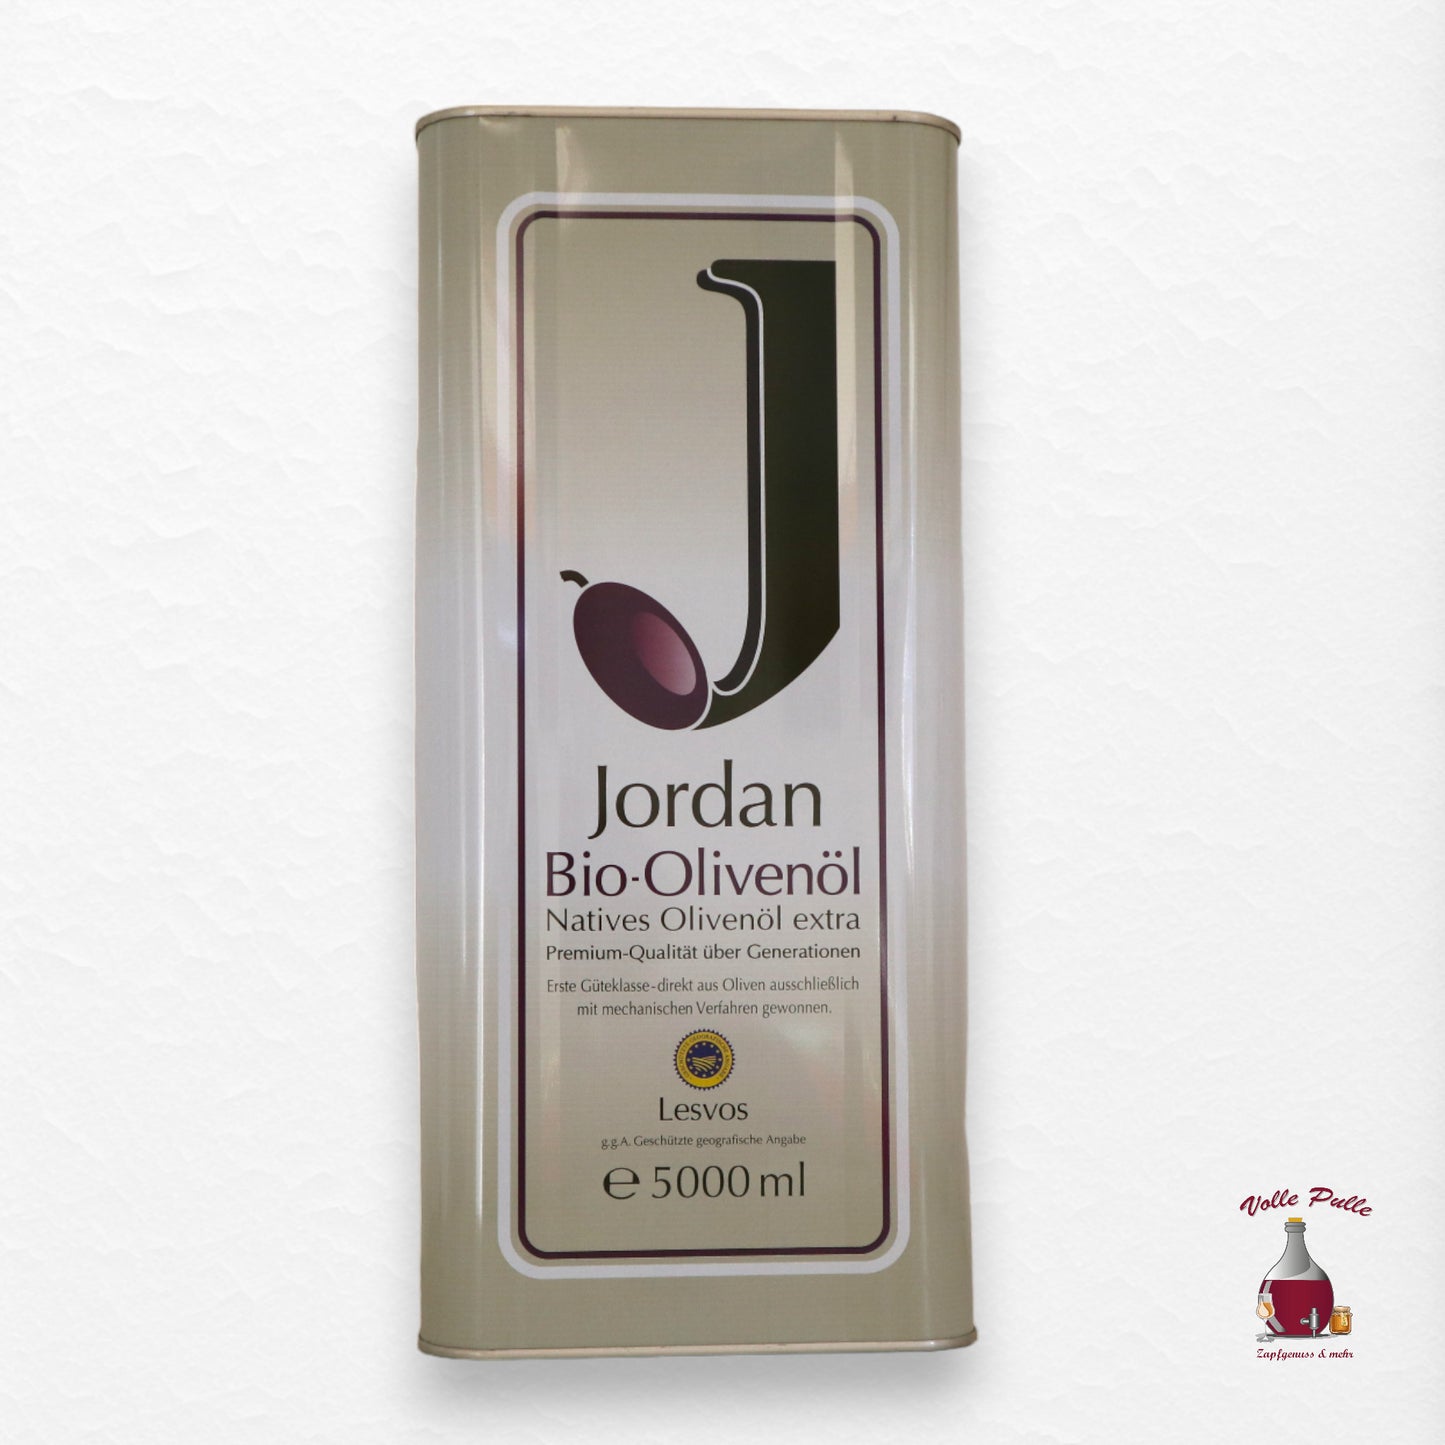 Jordan - BIO-Olivenöl - Kanister 5 Liter - GR-BIO-01